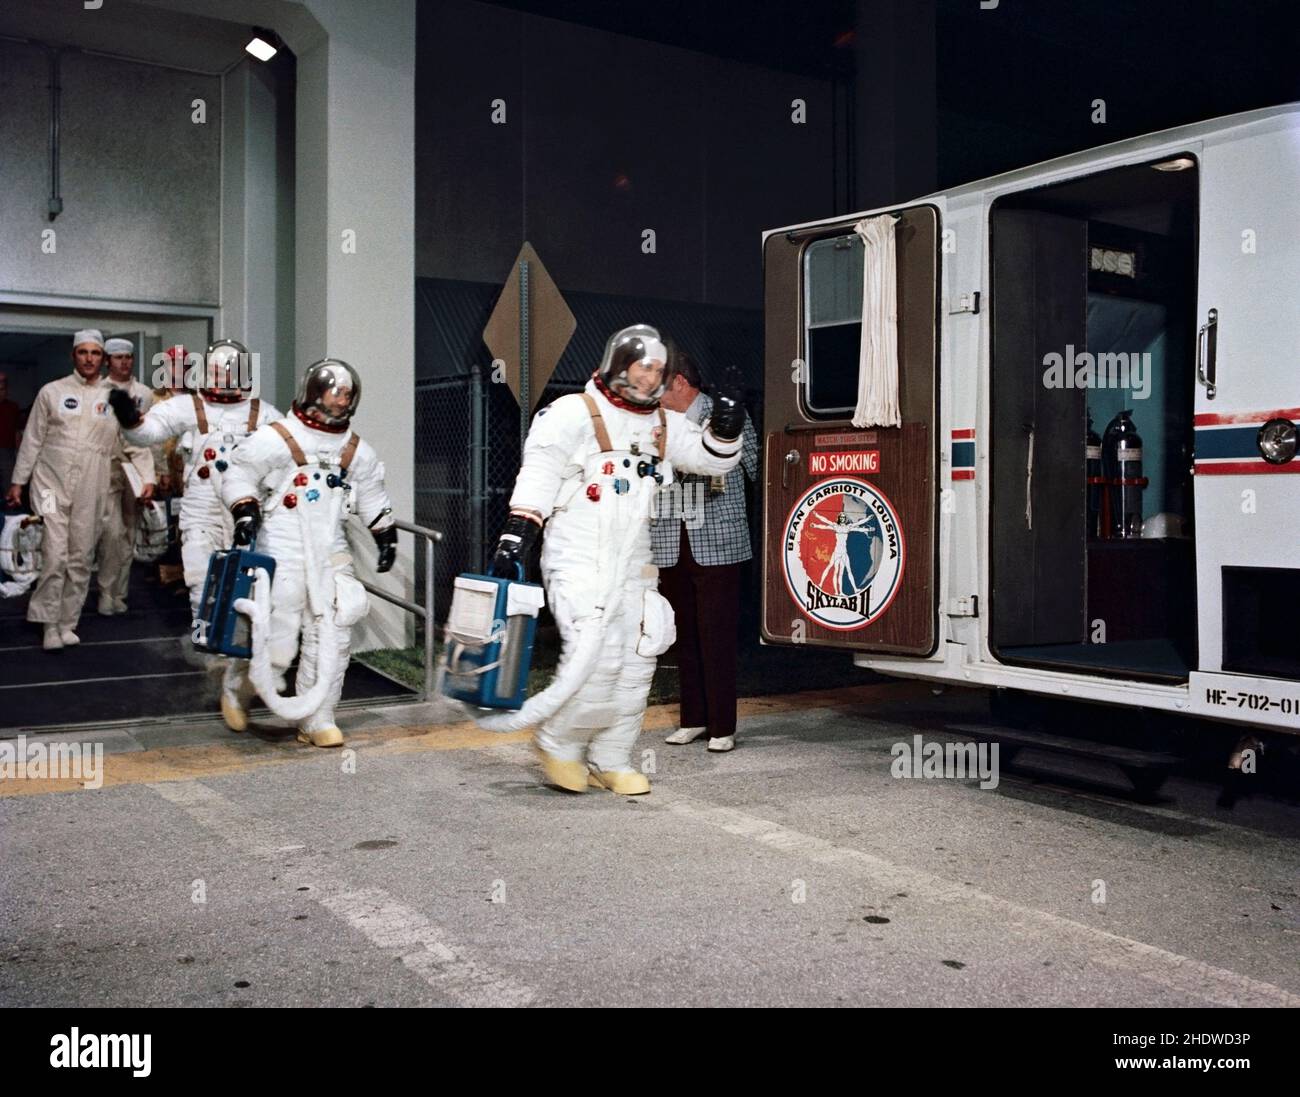 (28. Juli 1973) --- die drei Besatzungsmänner der zweiten bemannten Skylab-Mission (Skylab 3) verlassen am Morgen des Starts von Skylab 3 das bemannte Raumschiff Operations Building im Kennedy Space Center. An der Spitze steht Astronaut Alan L. Bean, Kommandant, gefolgt von Wissenschaftler-Astronaut Owen K. Garriott, Wissenschaftspilot, und Astronaut Jack R. Lousma, Pilot. Sie stiegen in den speziellen Van ein, der sie zum Pad B im KSC Launch Complex 39 brachte, wo sie das Weltraumfahrzeug Skylab 3/Saturn 1B erwarteten. Der Start von Skylab 3 fand am Samstag, den 28. Juli 1973, um 7:11 Uhr (EDT) statt. Die drei Astronauten sollten spen Stockfoto